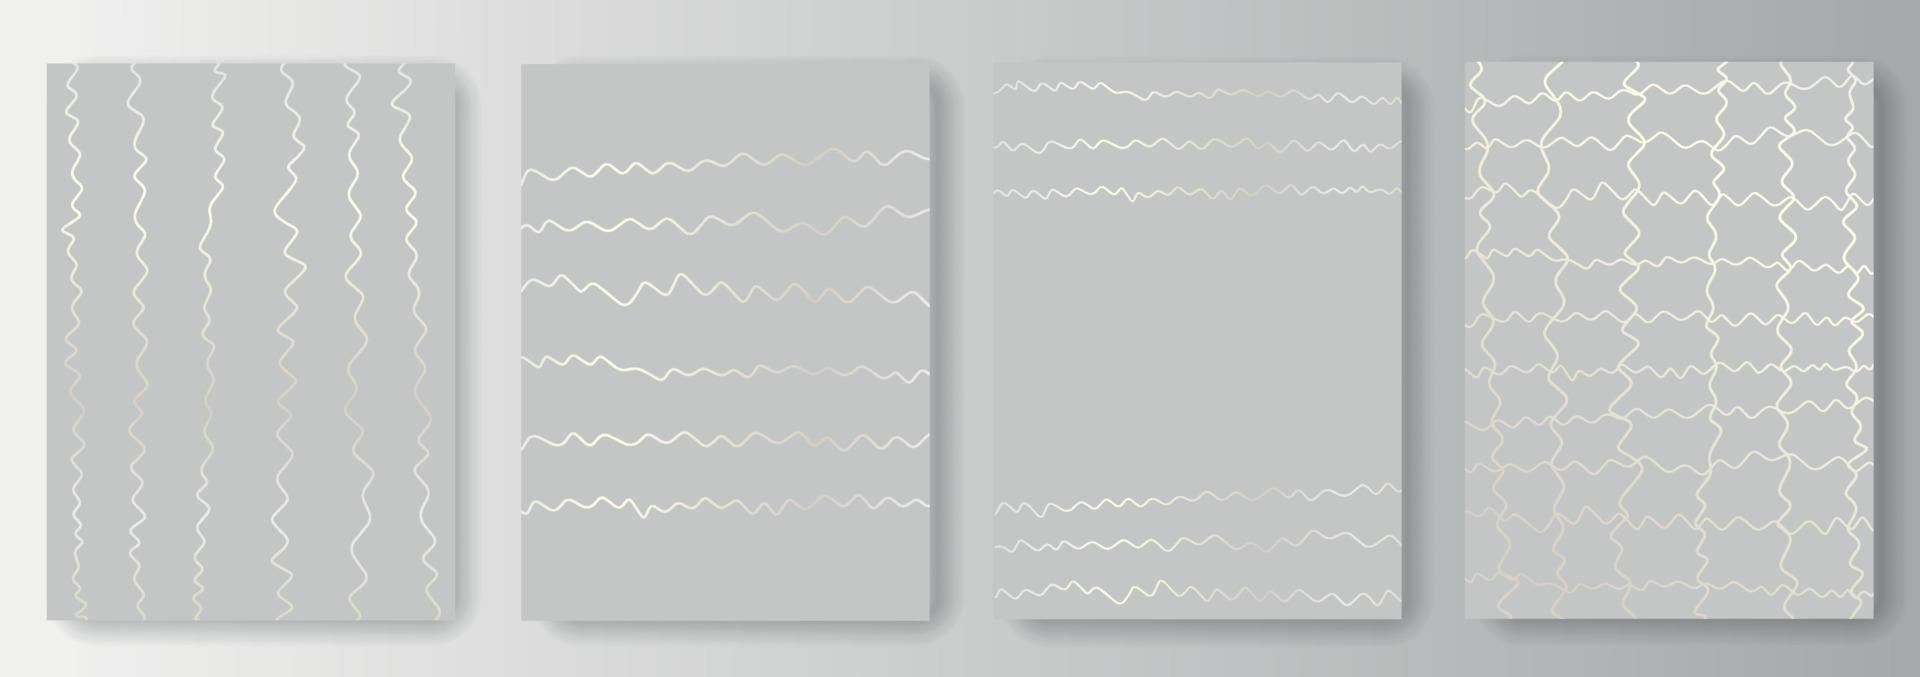 colección de fondos grises con líneas onduladas plateadas vector